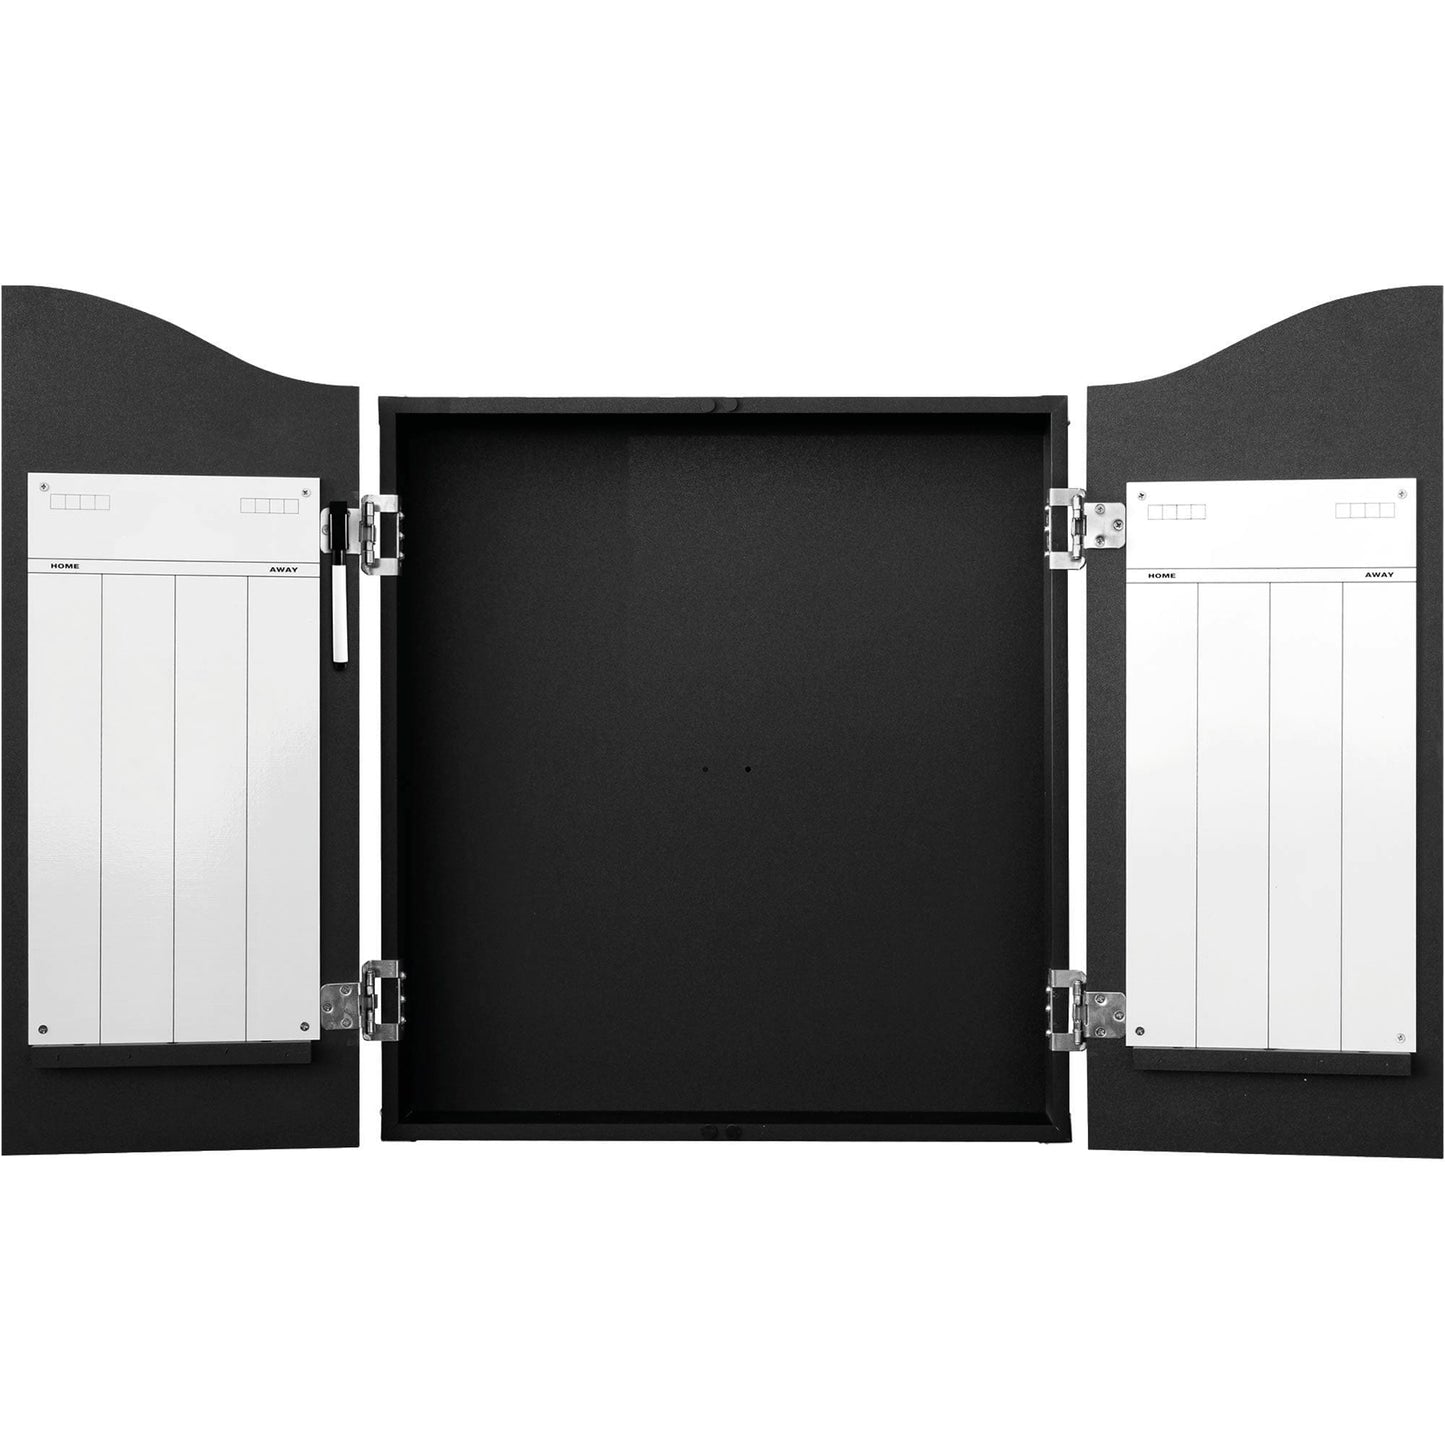 Def Leppard Dartboard Cabinet - Official Licensed - C1 - Premium Black - Shattered Glass